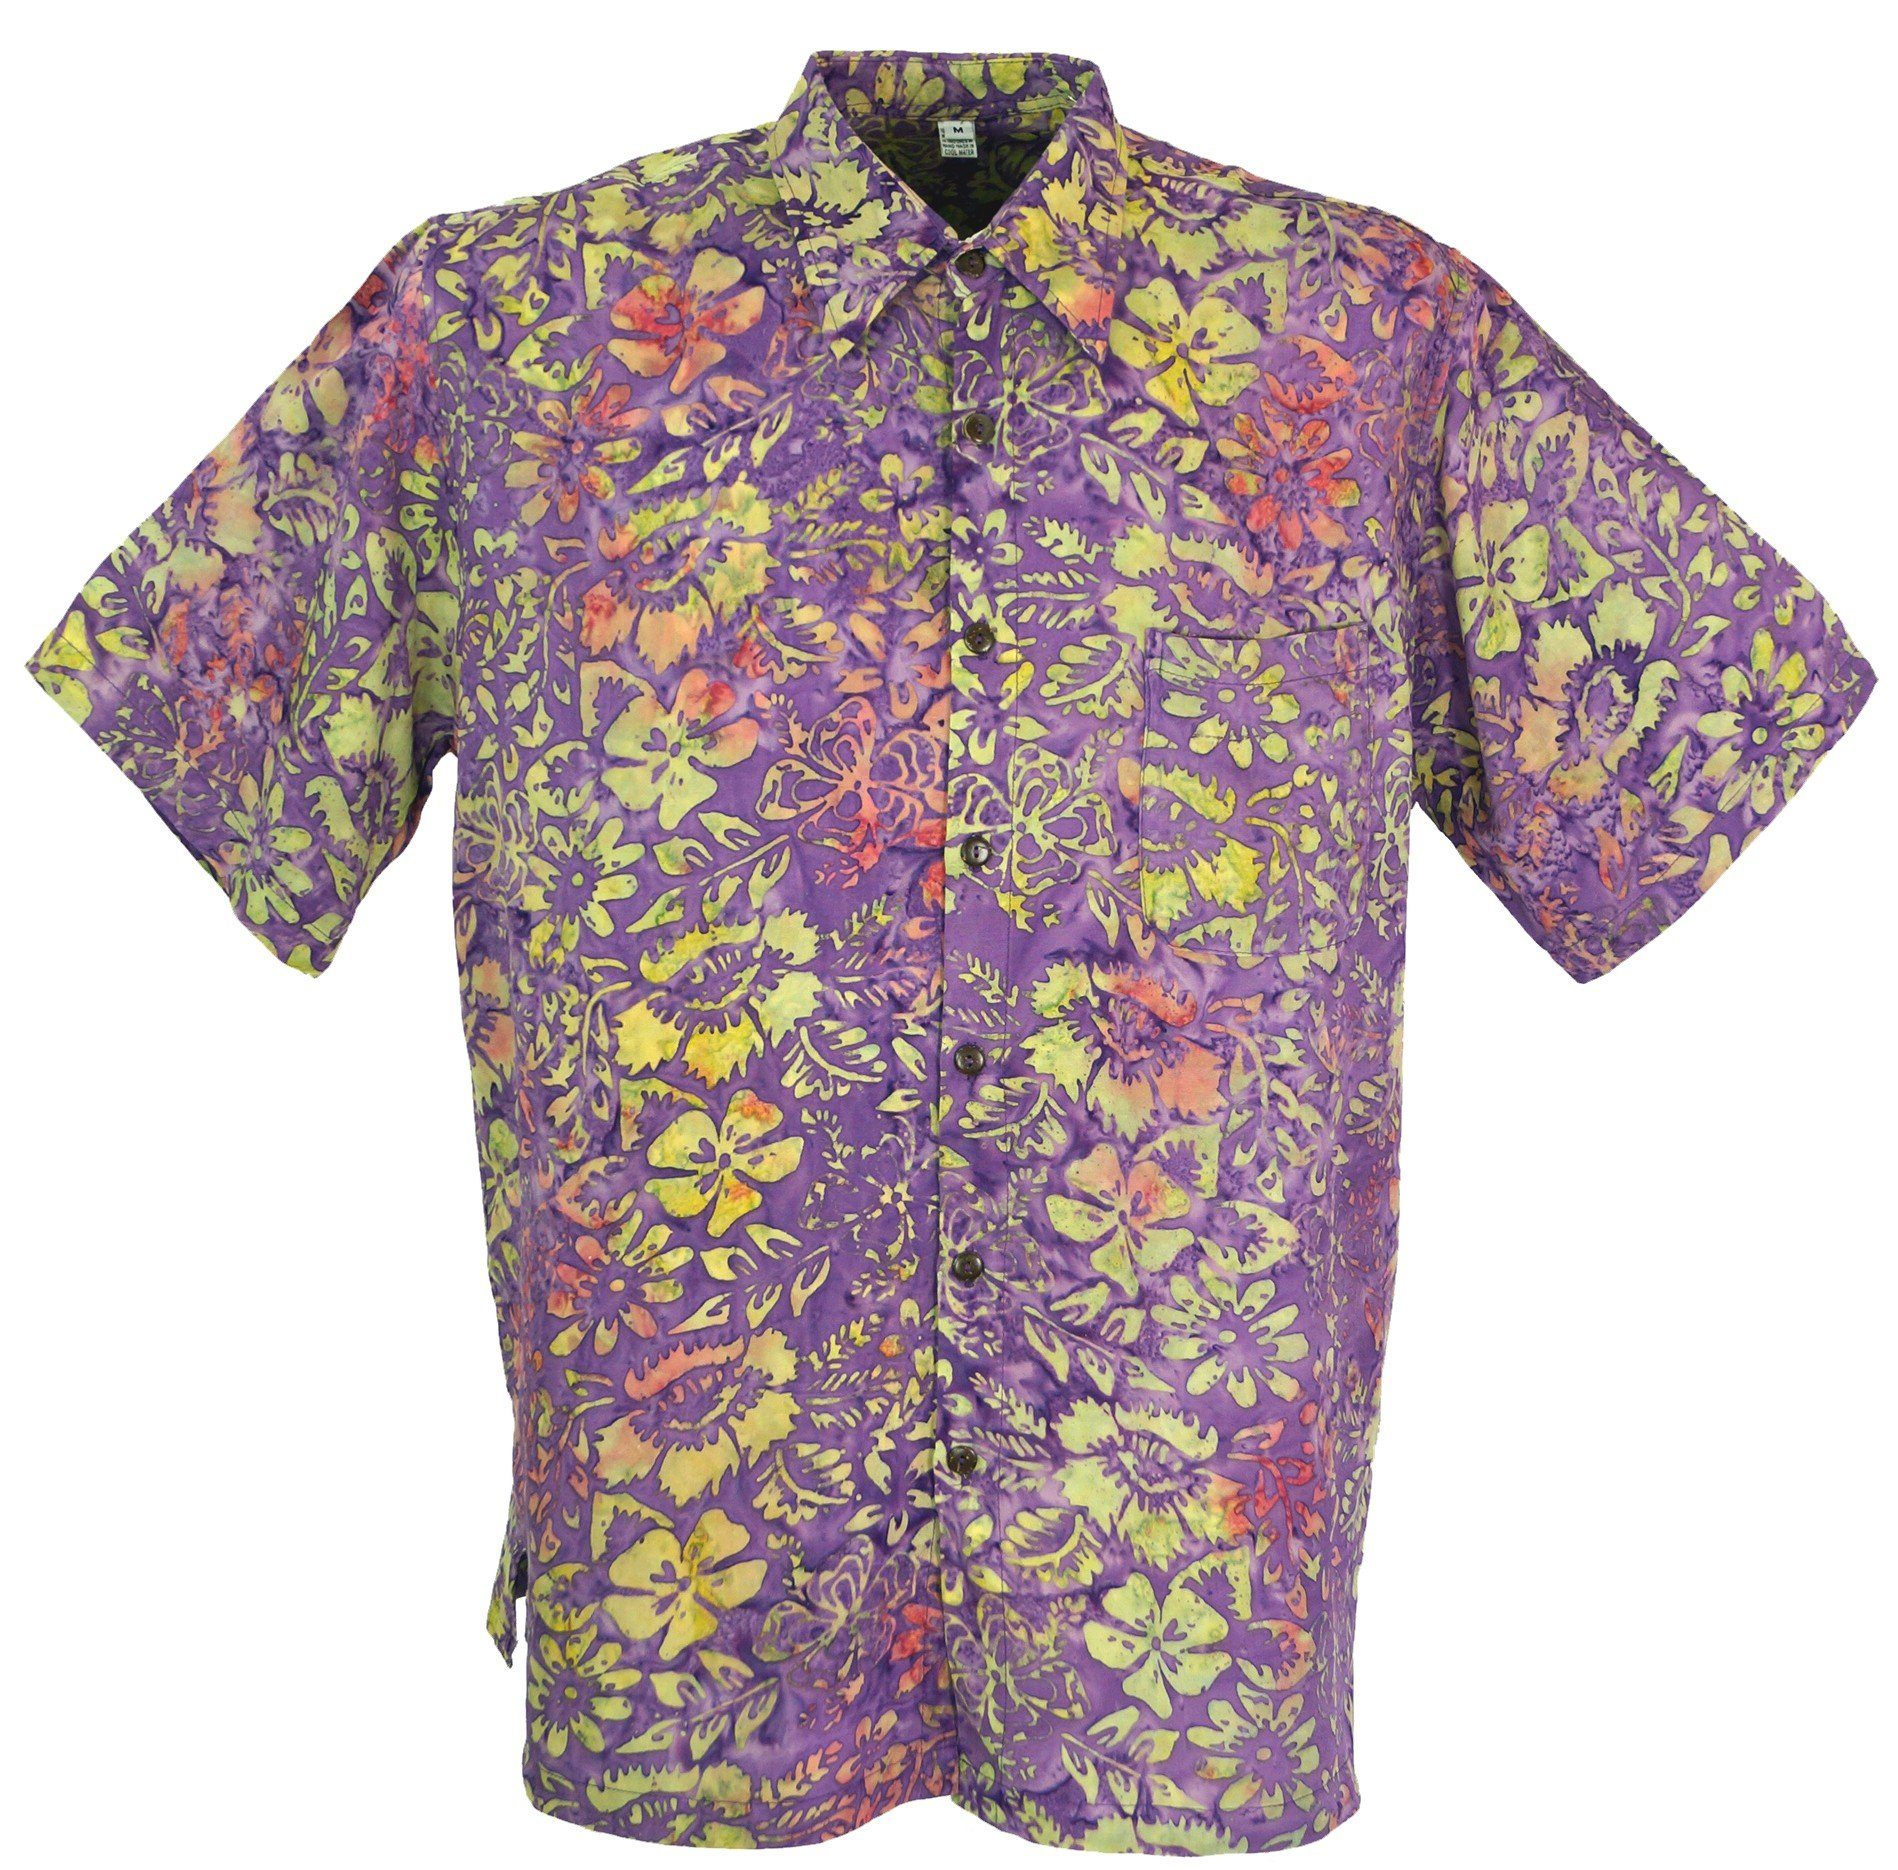 Guru-Shop Hemd & Shirt Hippiehemd, Hawaiihemd, Batik Hemd - flieder/gelb Hippie, Ethno Style, alternative Bekleidung